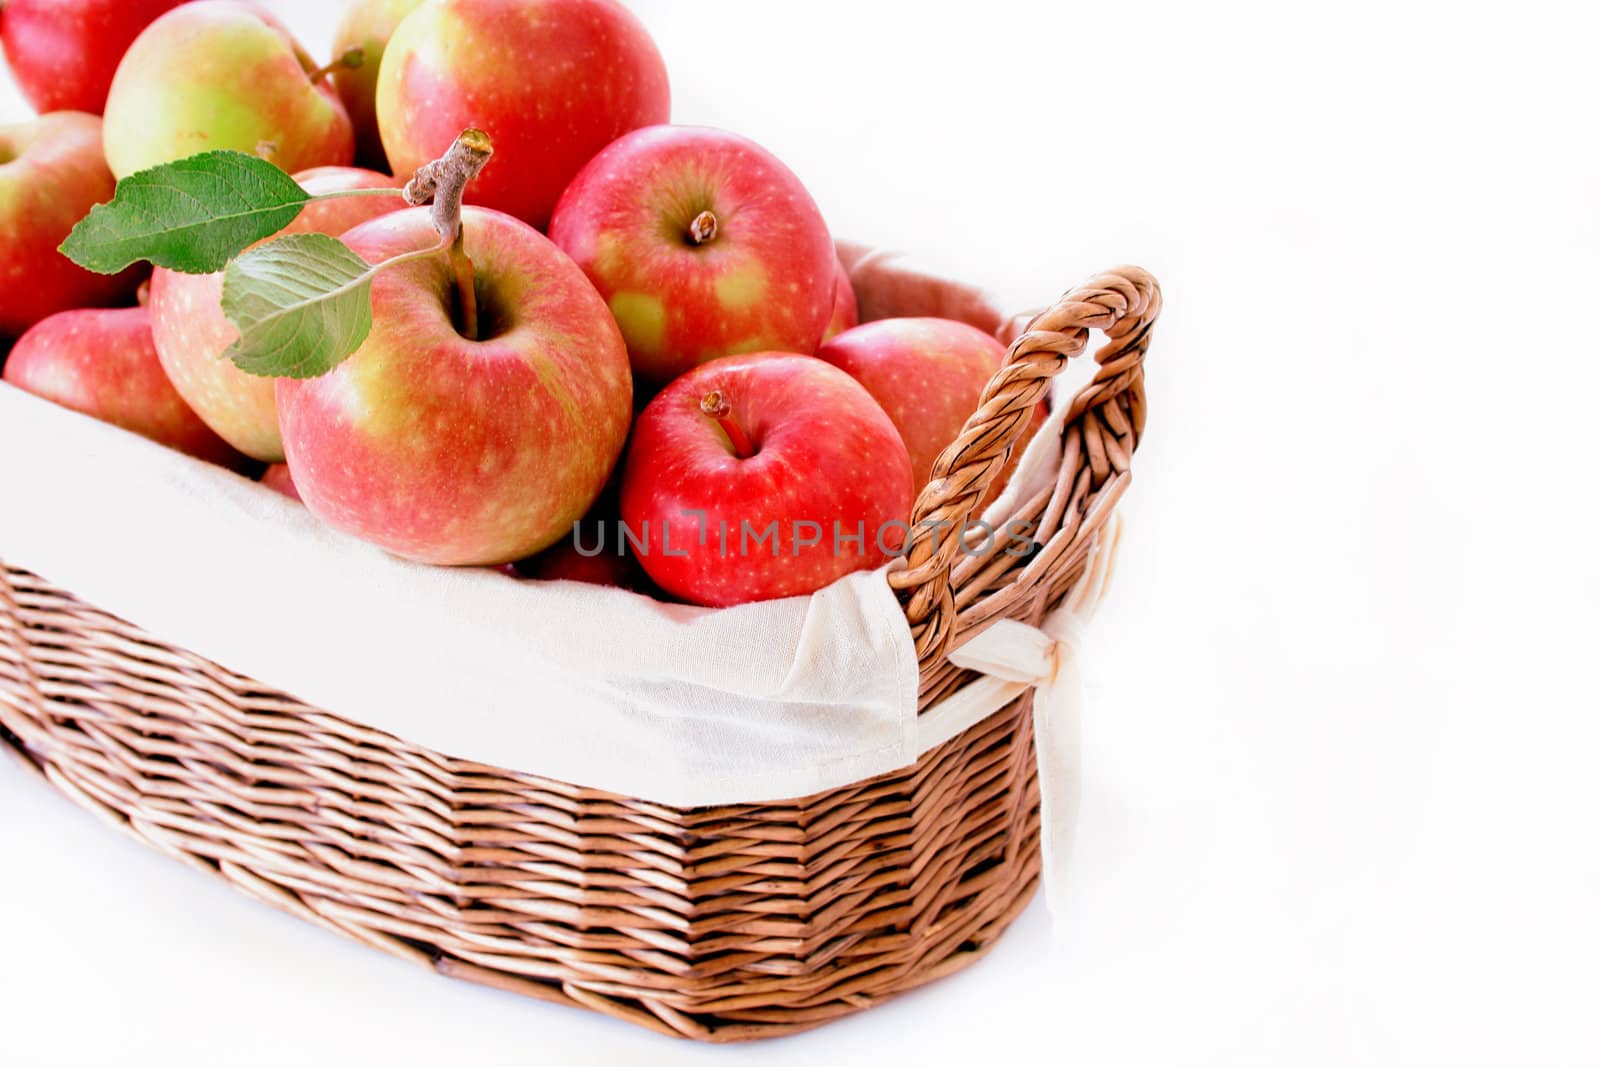 Bushel of Apples by thephotoguy